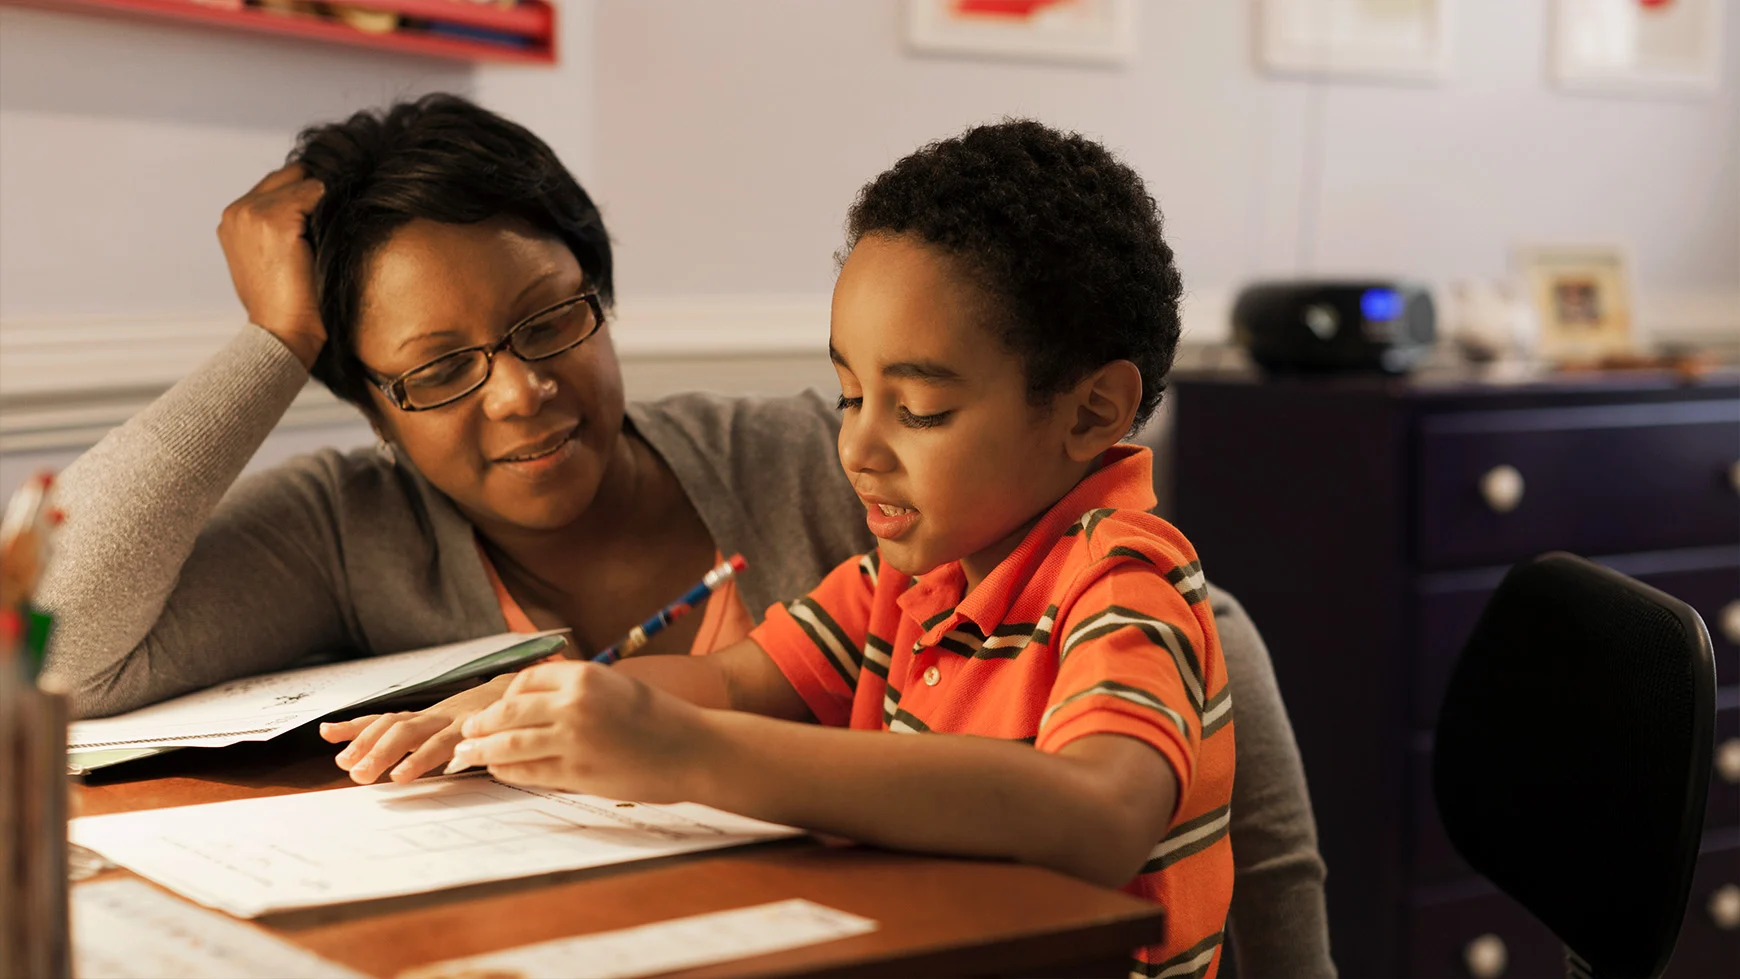 Una mamá sentada con su hijo observa mientras el niño sostiene un lápiz y trabaja en una tarea de escritura. Ambos sonríen.